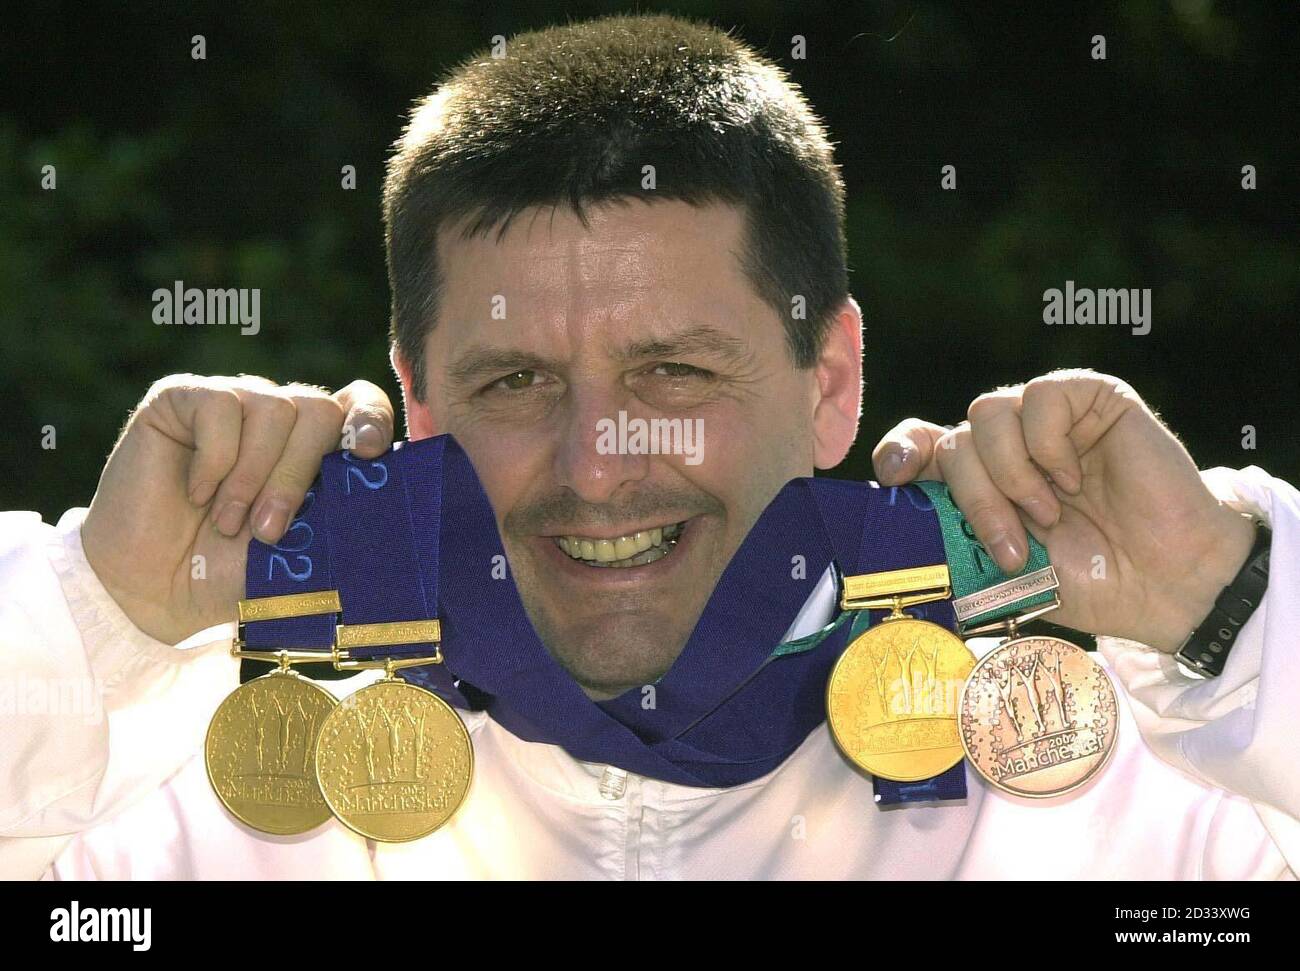 3 Gold's y a Bronze para el shooter de pistola Michael Gault en las competiciones de tiro de los Juegos de la Commonwealth de 2002 en el National Shooting Center Bisley. Foto de stock